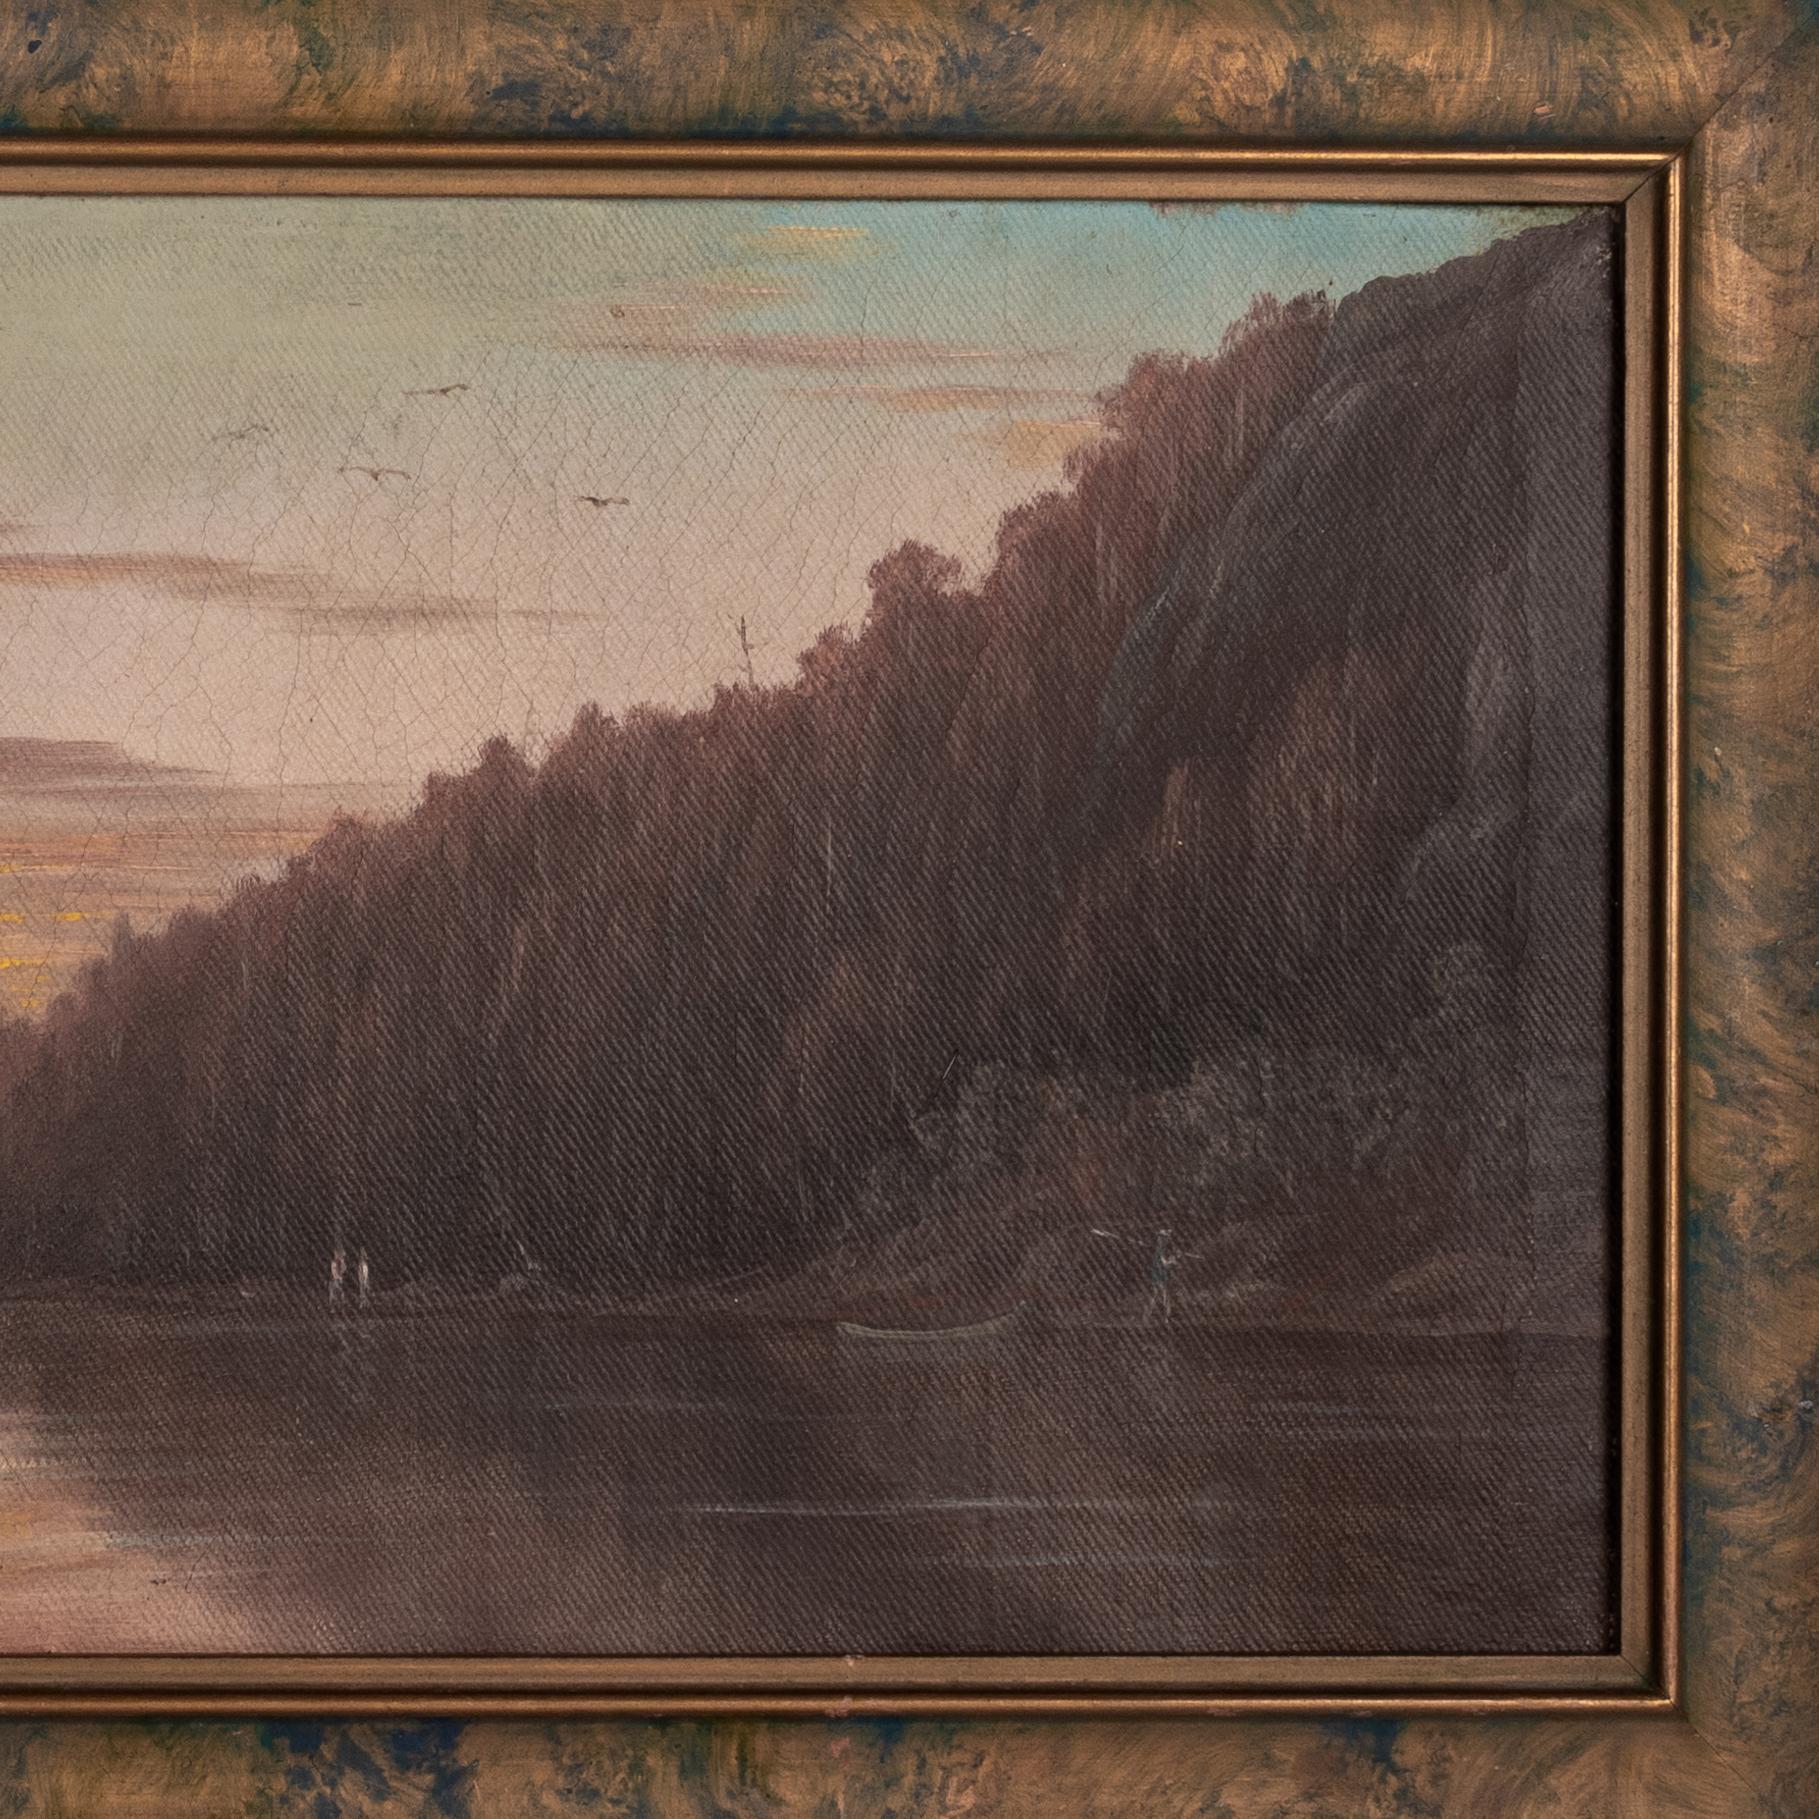 Un bon paysage fluvial californien réaliste à l'huile sur toile de la fin du XIXe siècle, vers 1888, par Albert Horatio Slade (1843-1922).
La peinture représente une rivière traversant un paysage montagneux et boisé, plusieurs personnages se